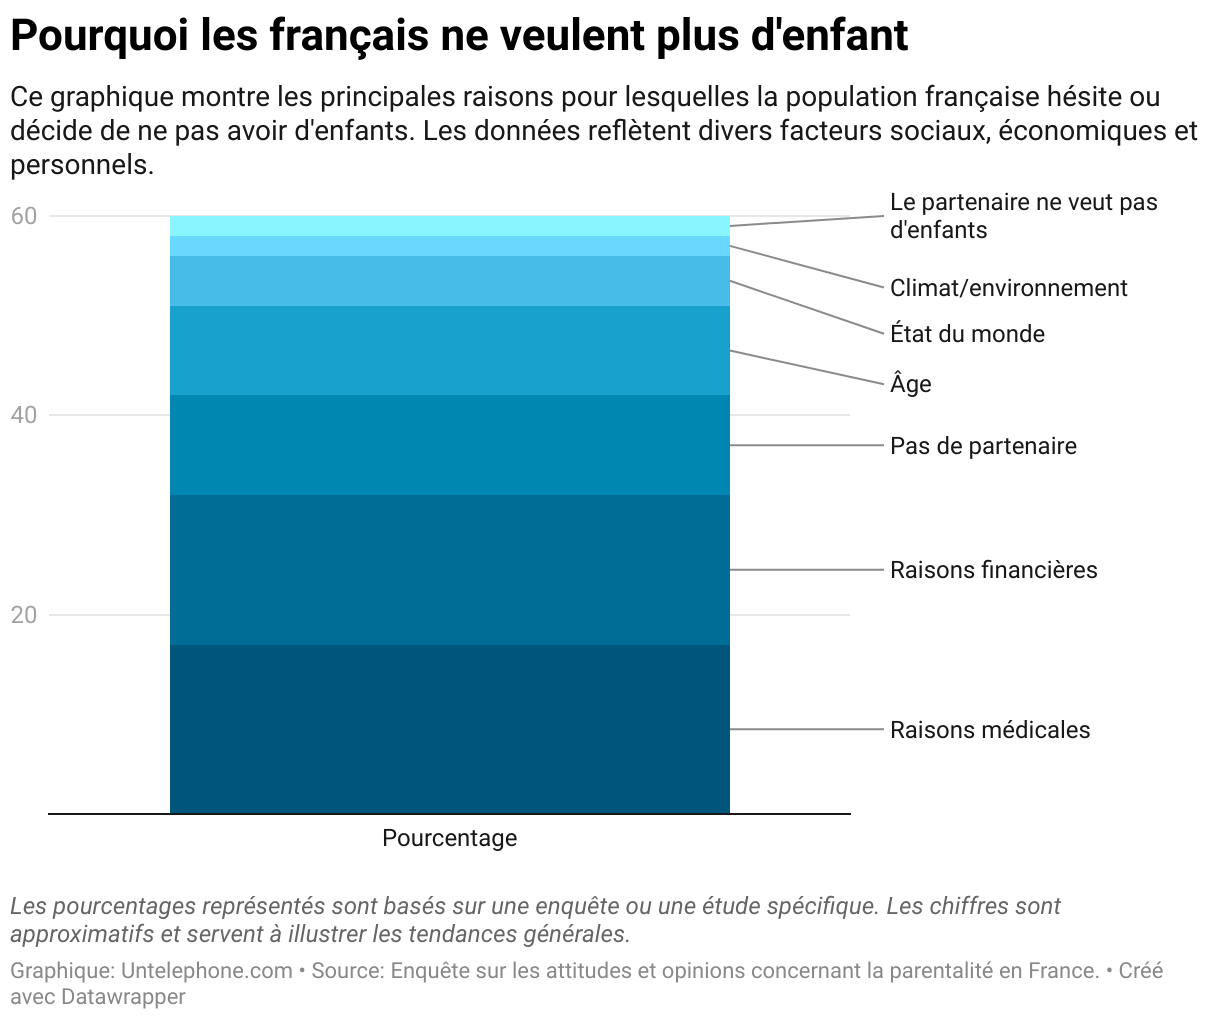 Graphique en barres indiquant les raisons pour lesquelles les Français choisissent de ne pas avoir d'enfants, avec 'Raisons médicales' comme principale raison à 17%, suivie par 'Raisons financières' à 15%, et d'autres facteurs tels que l'absence de partenaire et l'âge.